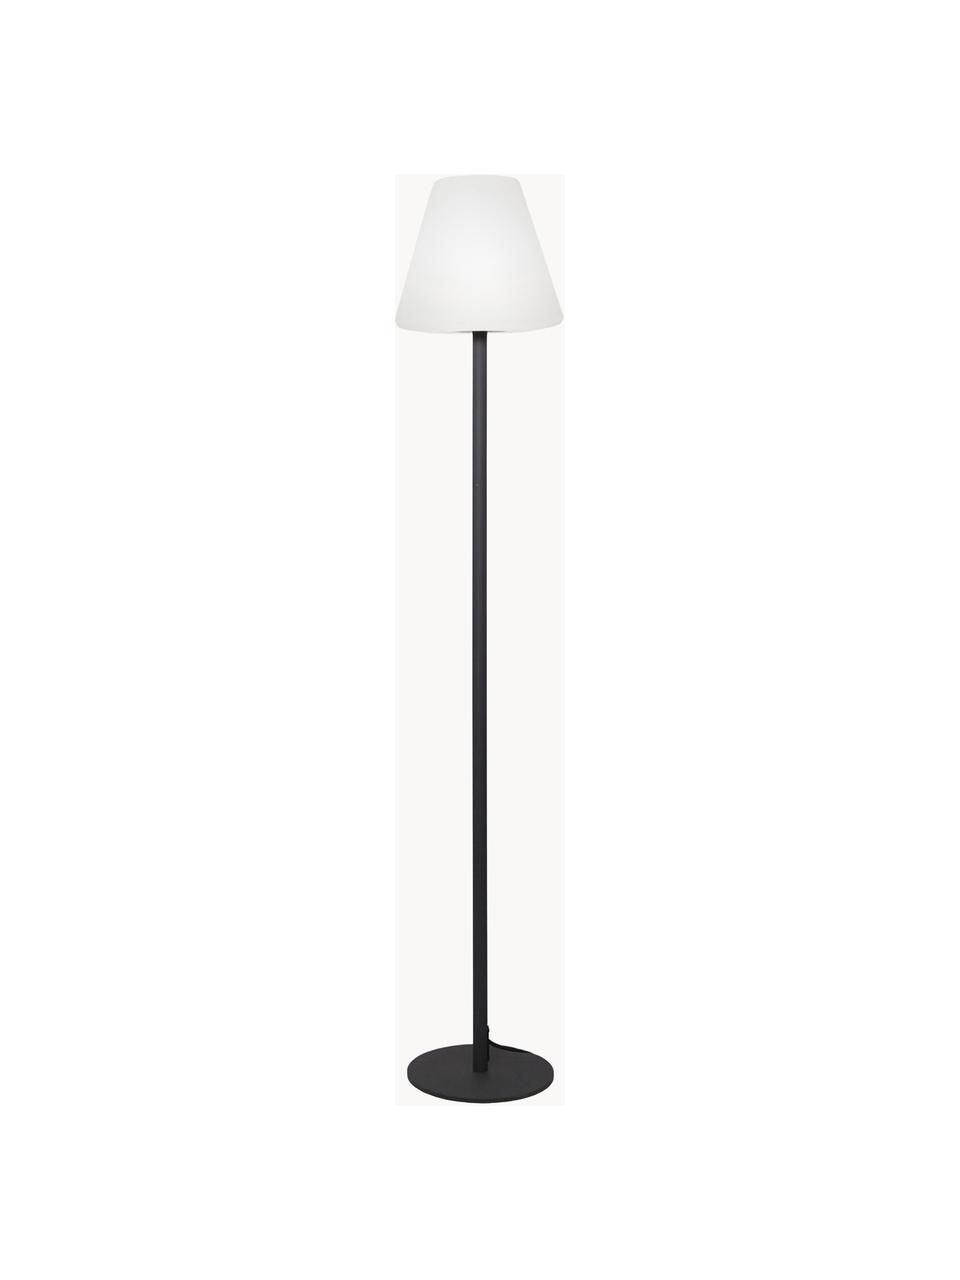 Outdoor LED-Stehlampe Gardenlight mit Stecker, Lampenschirm: Kunststoff, Weiss, Anthrazit, Ø 28 x H 150 cm